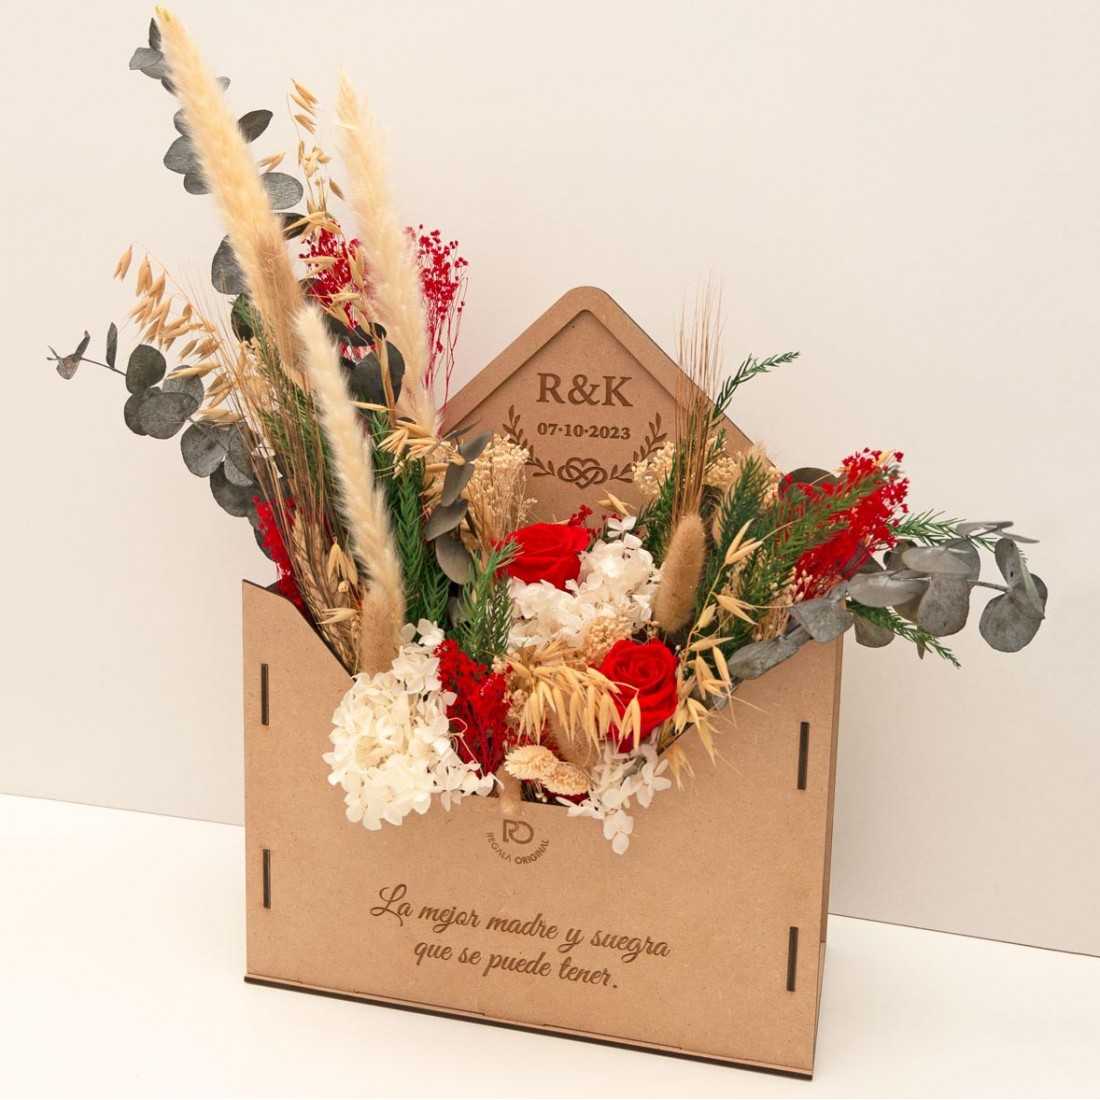 https://regalaoriginal.com/1361-thickbox_default/regalo-madre-y-suegra-boda-caja-sobre-con-flores-personalizada.jpg